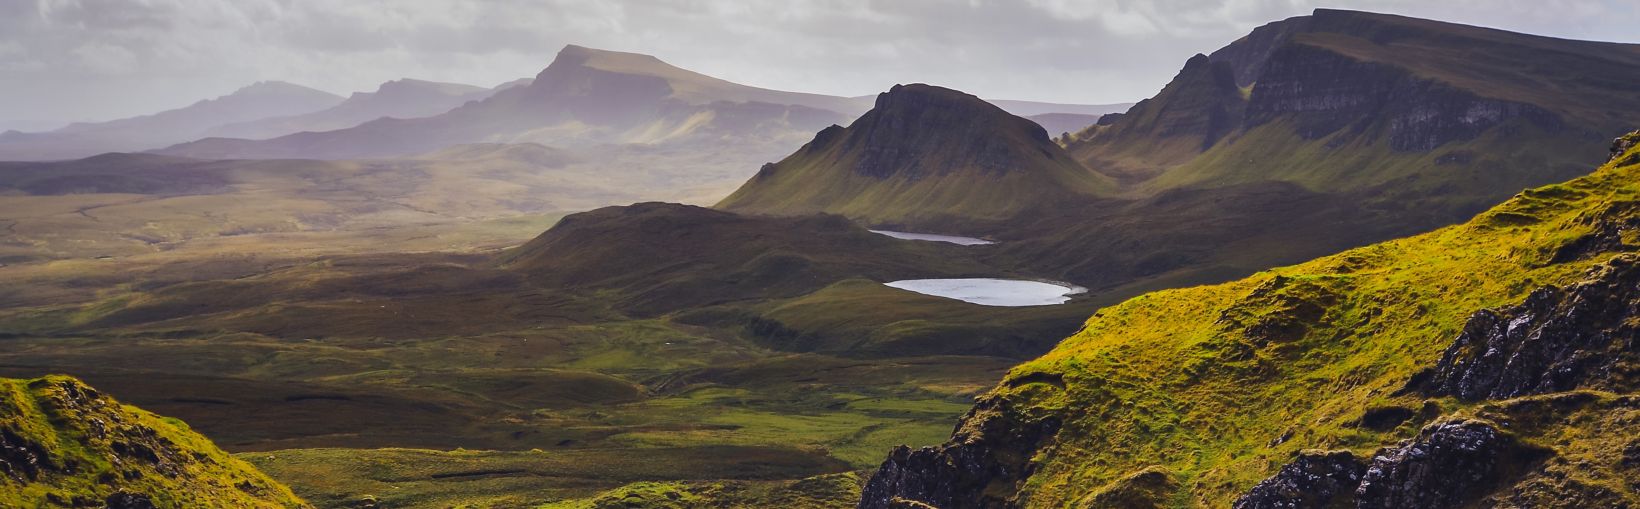 Landschaftsaufnahme des Quiraing-Passes auf der Isle of Skye, Schottische Highlands